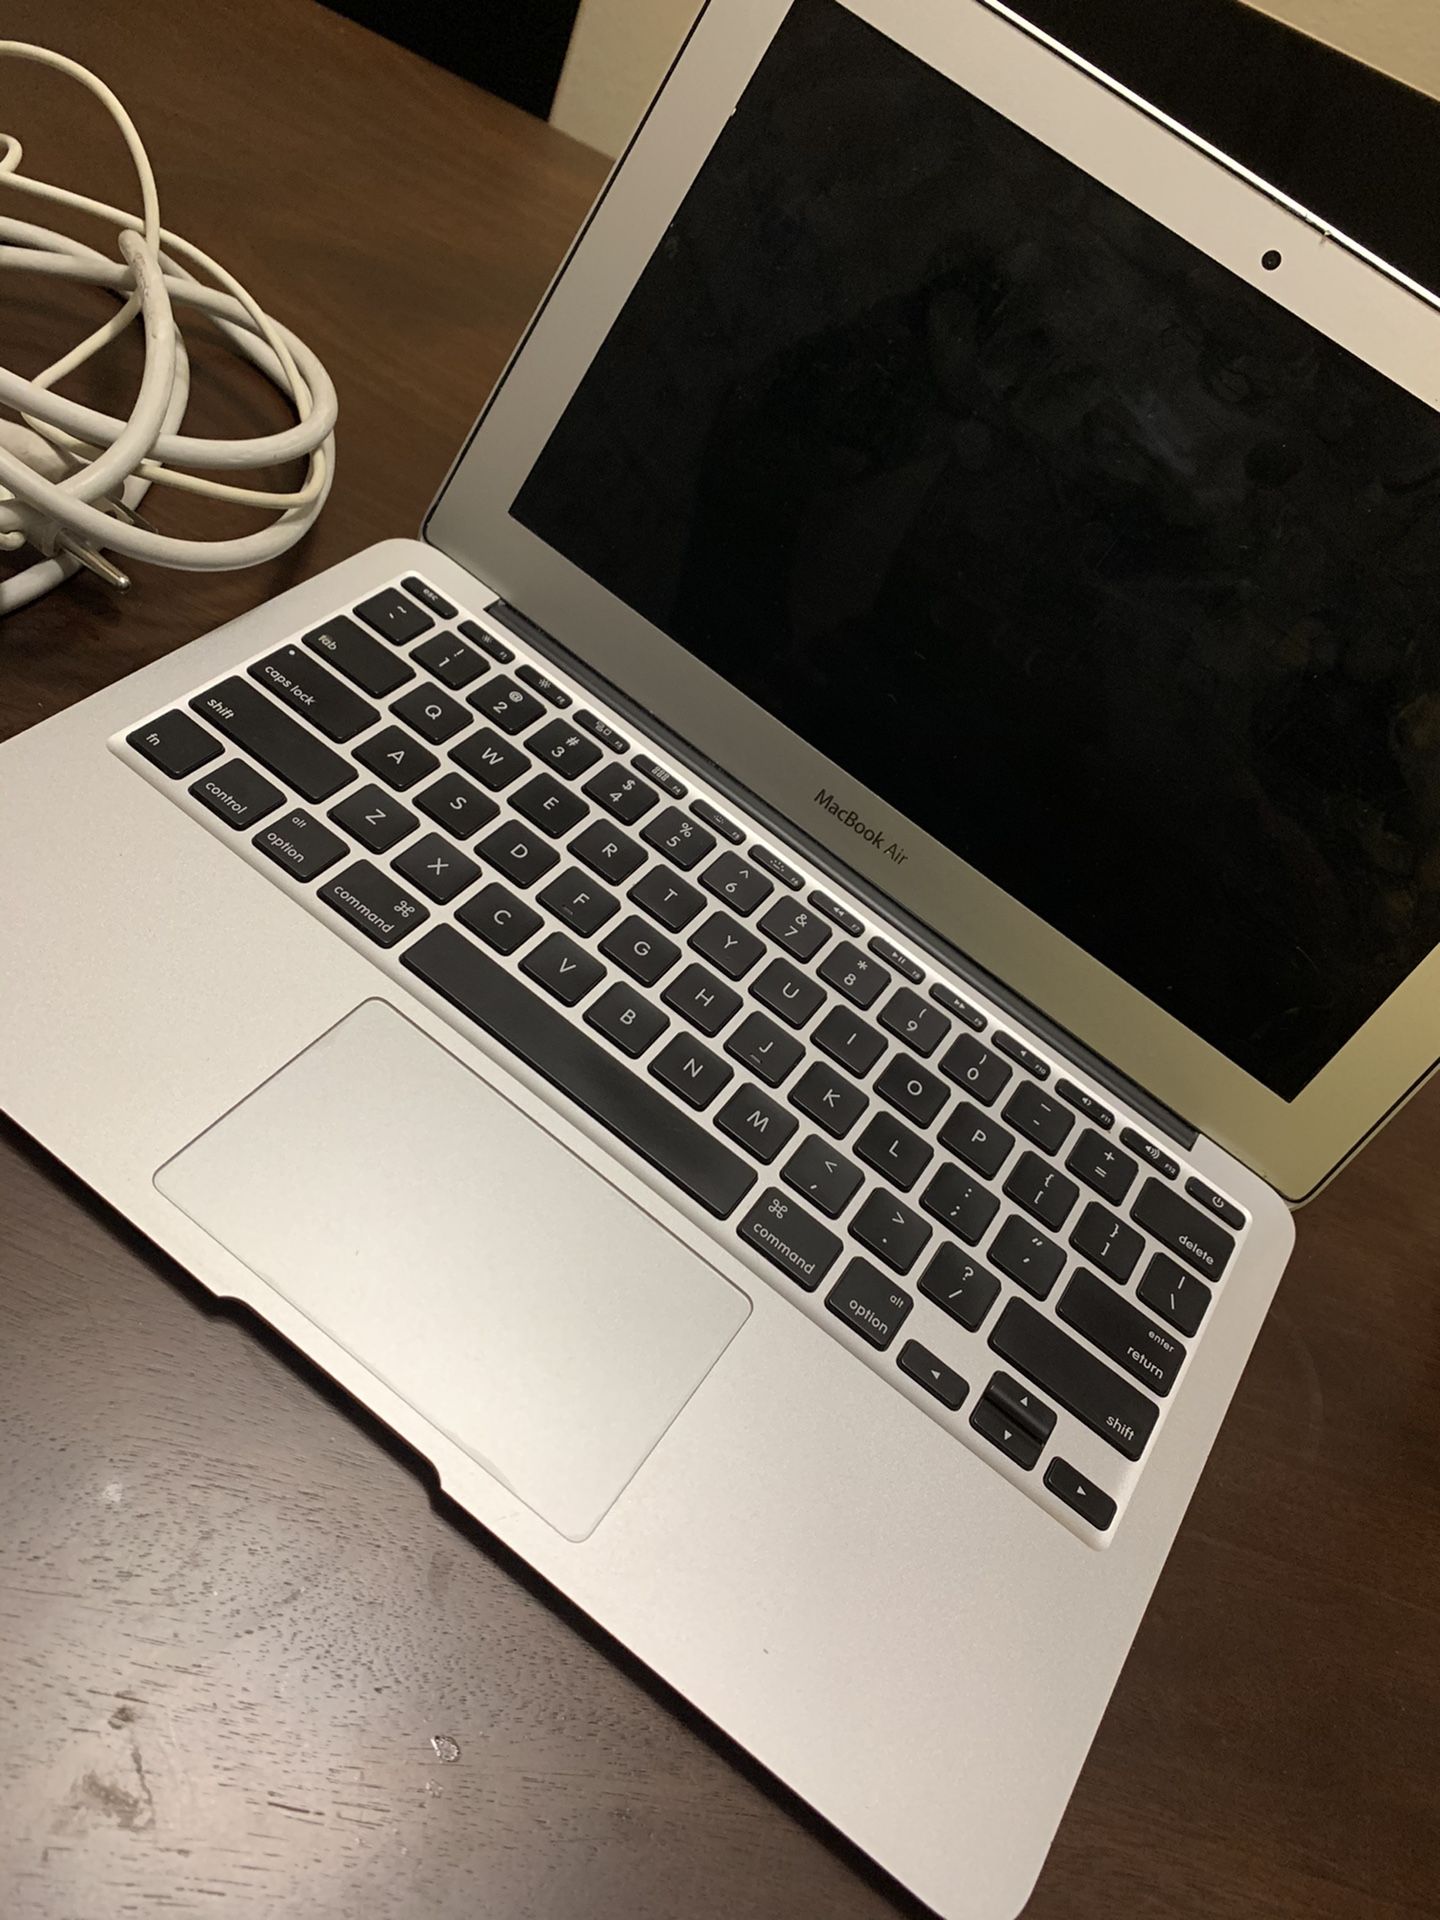 2014 MacBook Air!